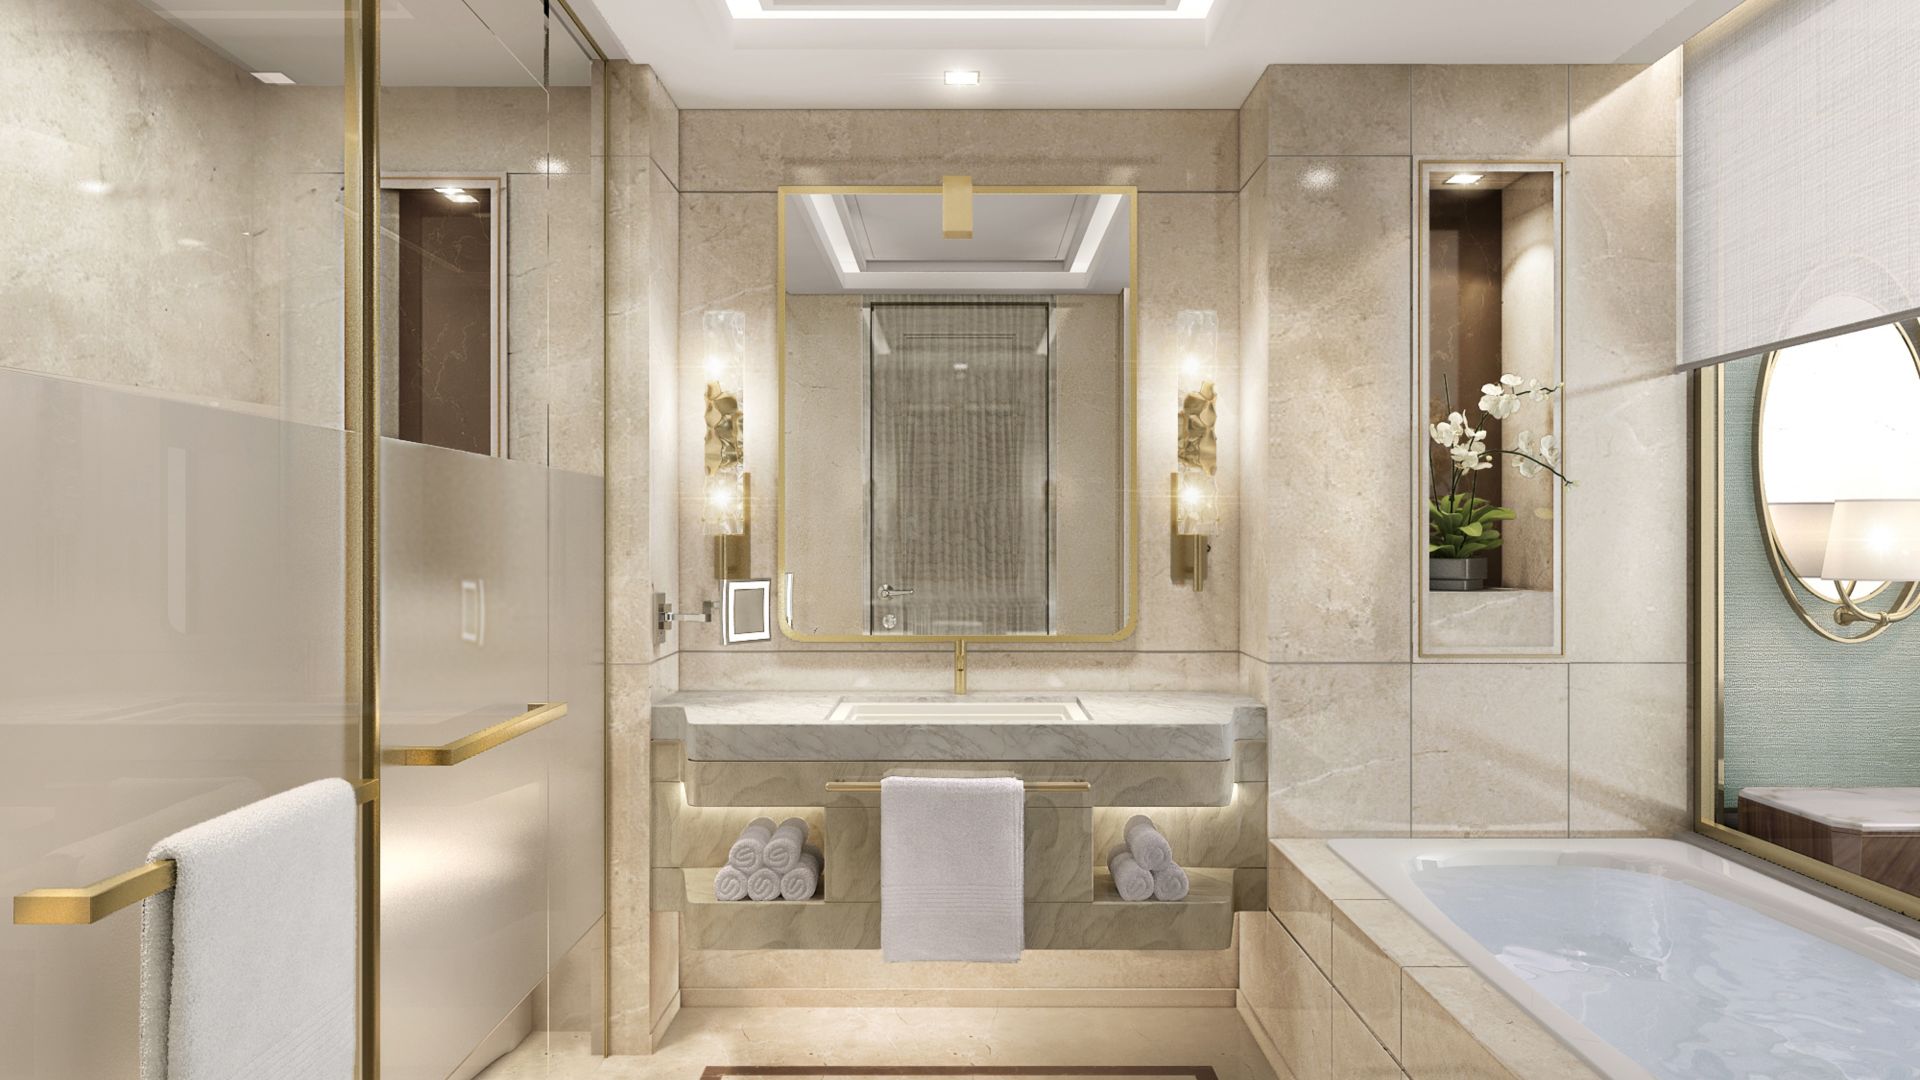 | Bathroom with Luxury Amenities